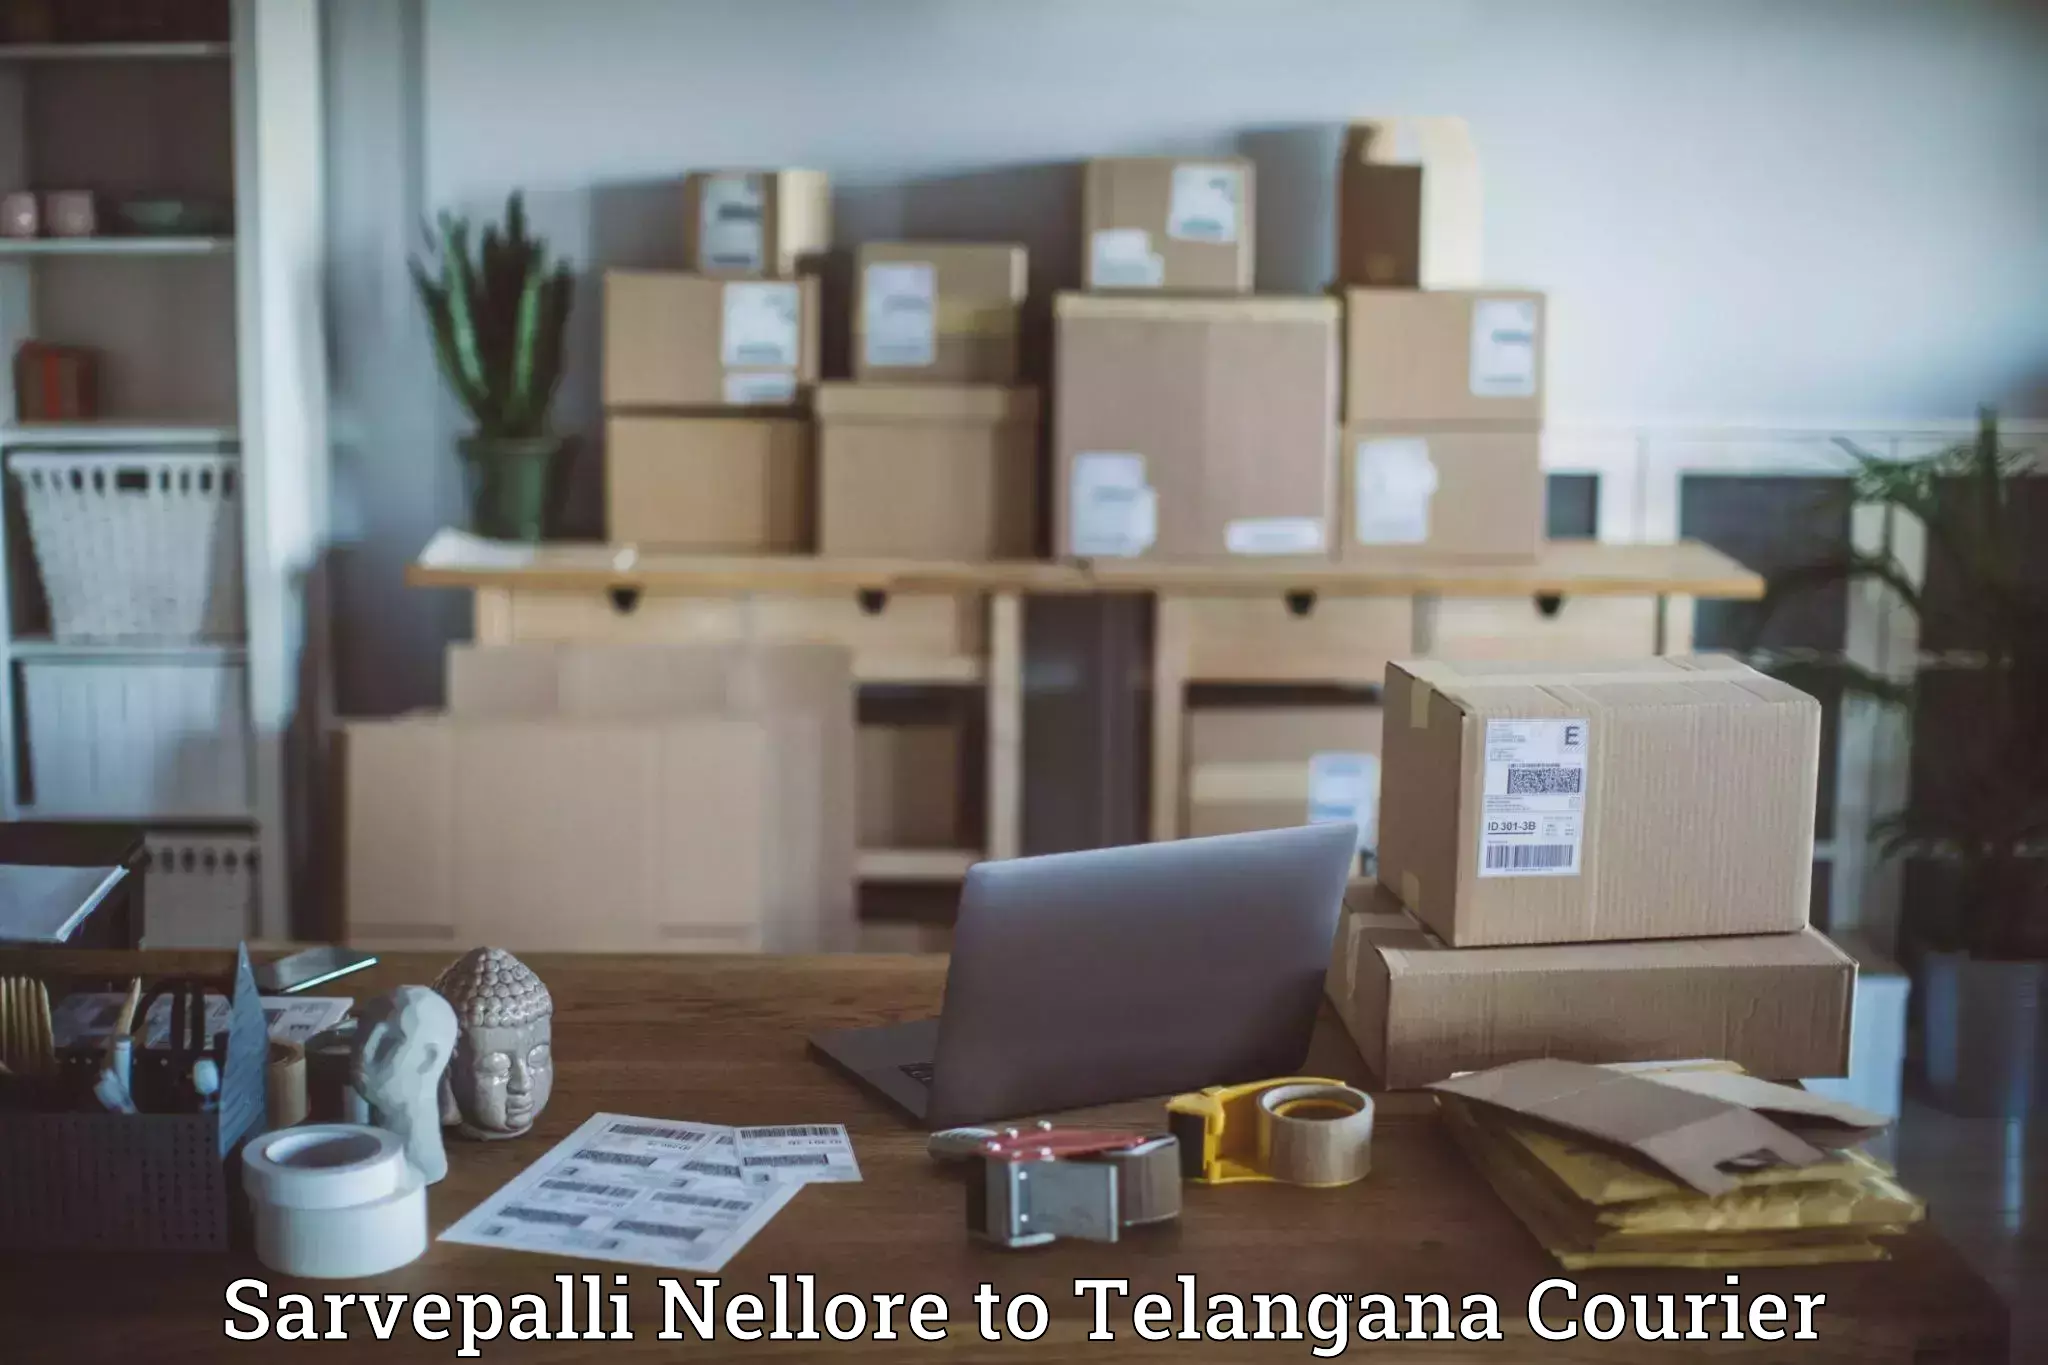 Courier service efficiency Sarvepalli Nellore to Narmetta